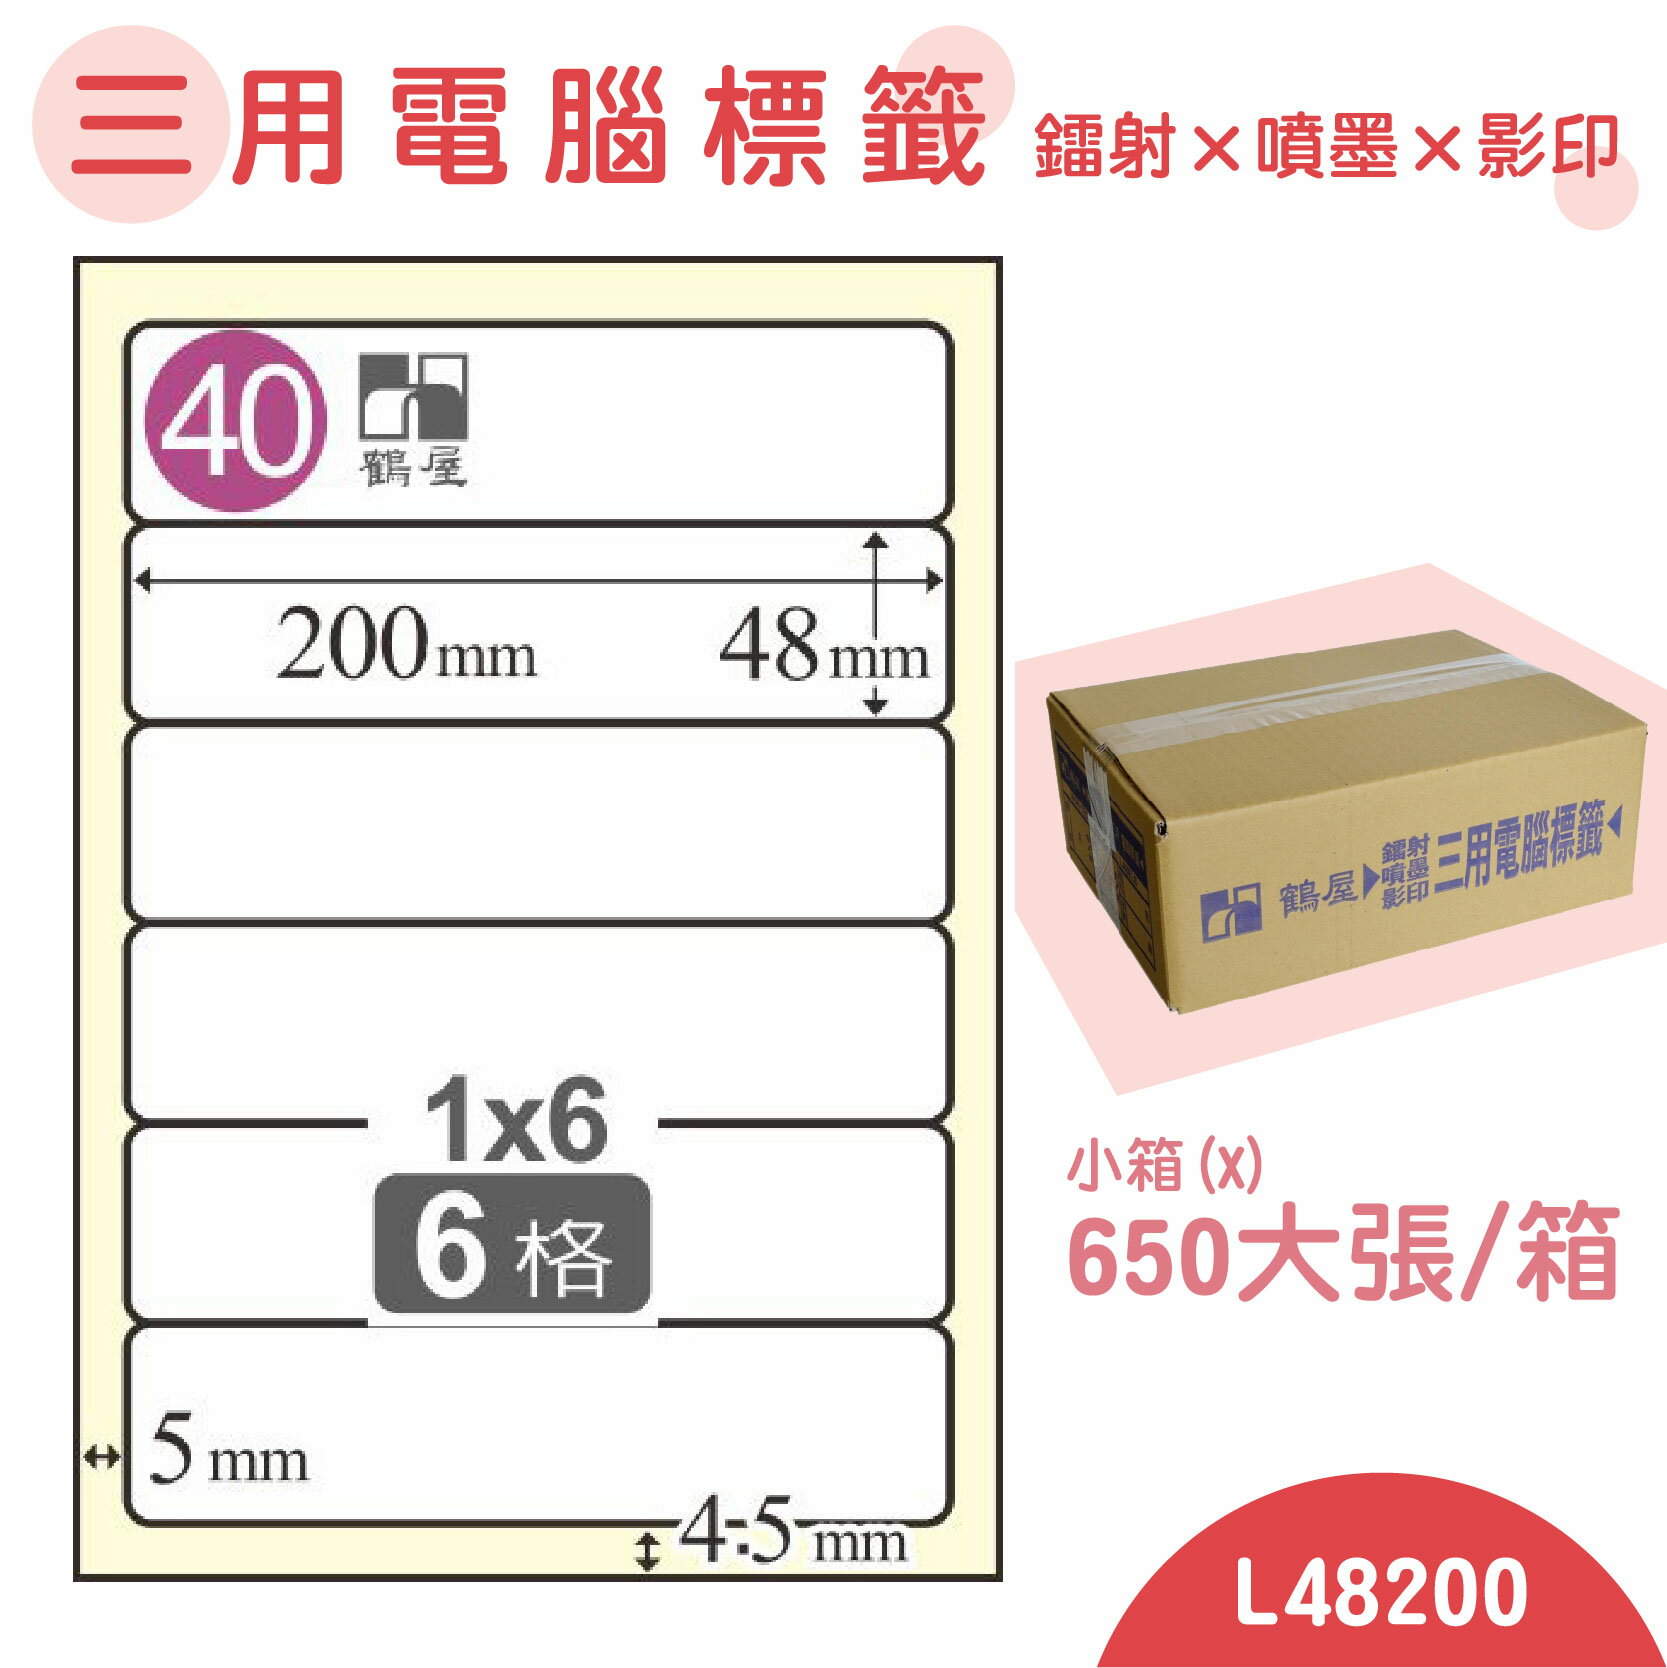 【品質第一】鶴屋 電腦標籤紙 白 L48200 6格 650大張/小箱 影印 雷射 噴墨 三用 標籤 出貨 貼紙